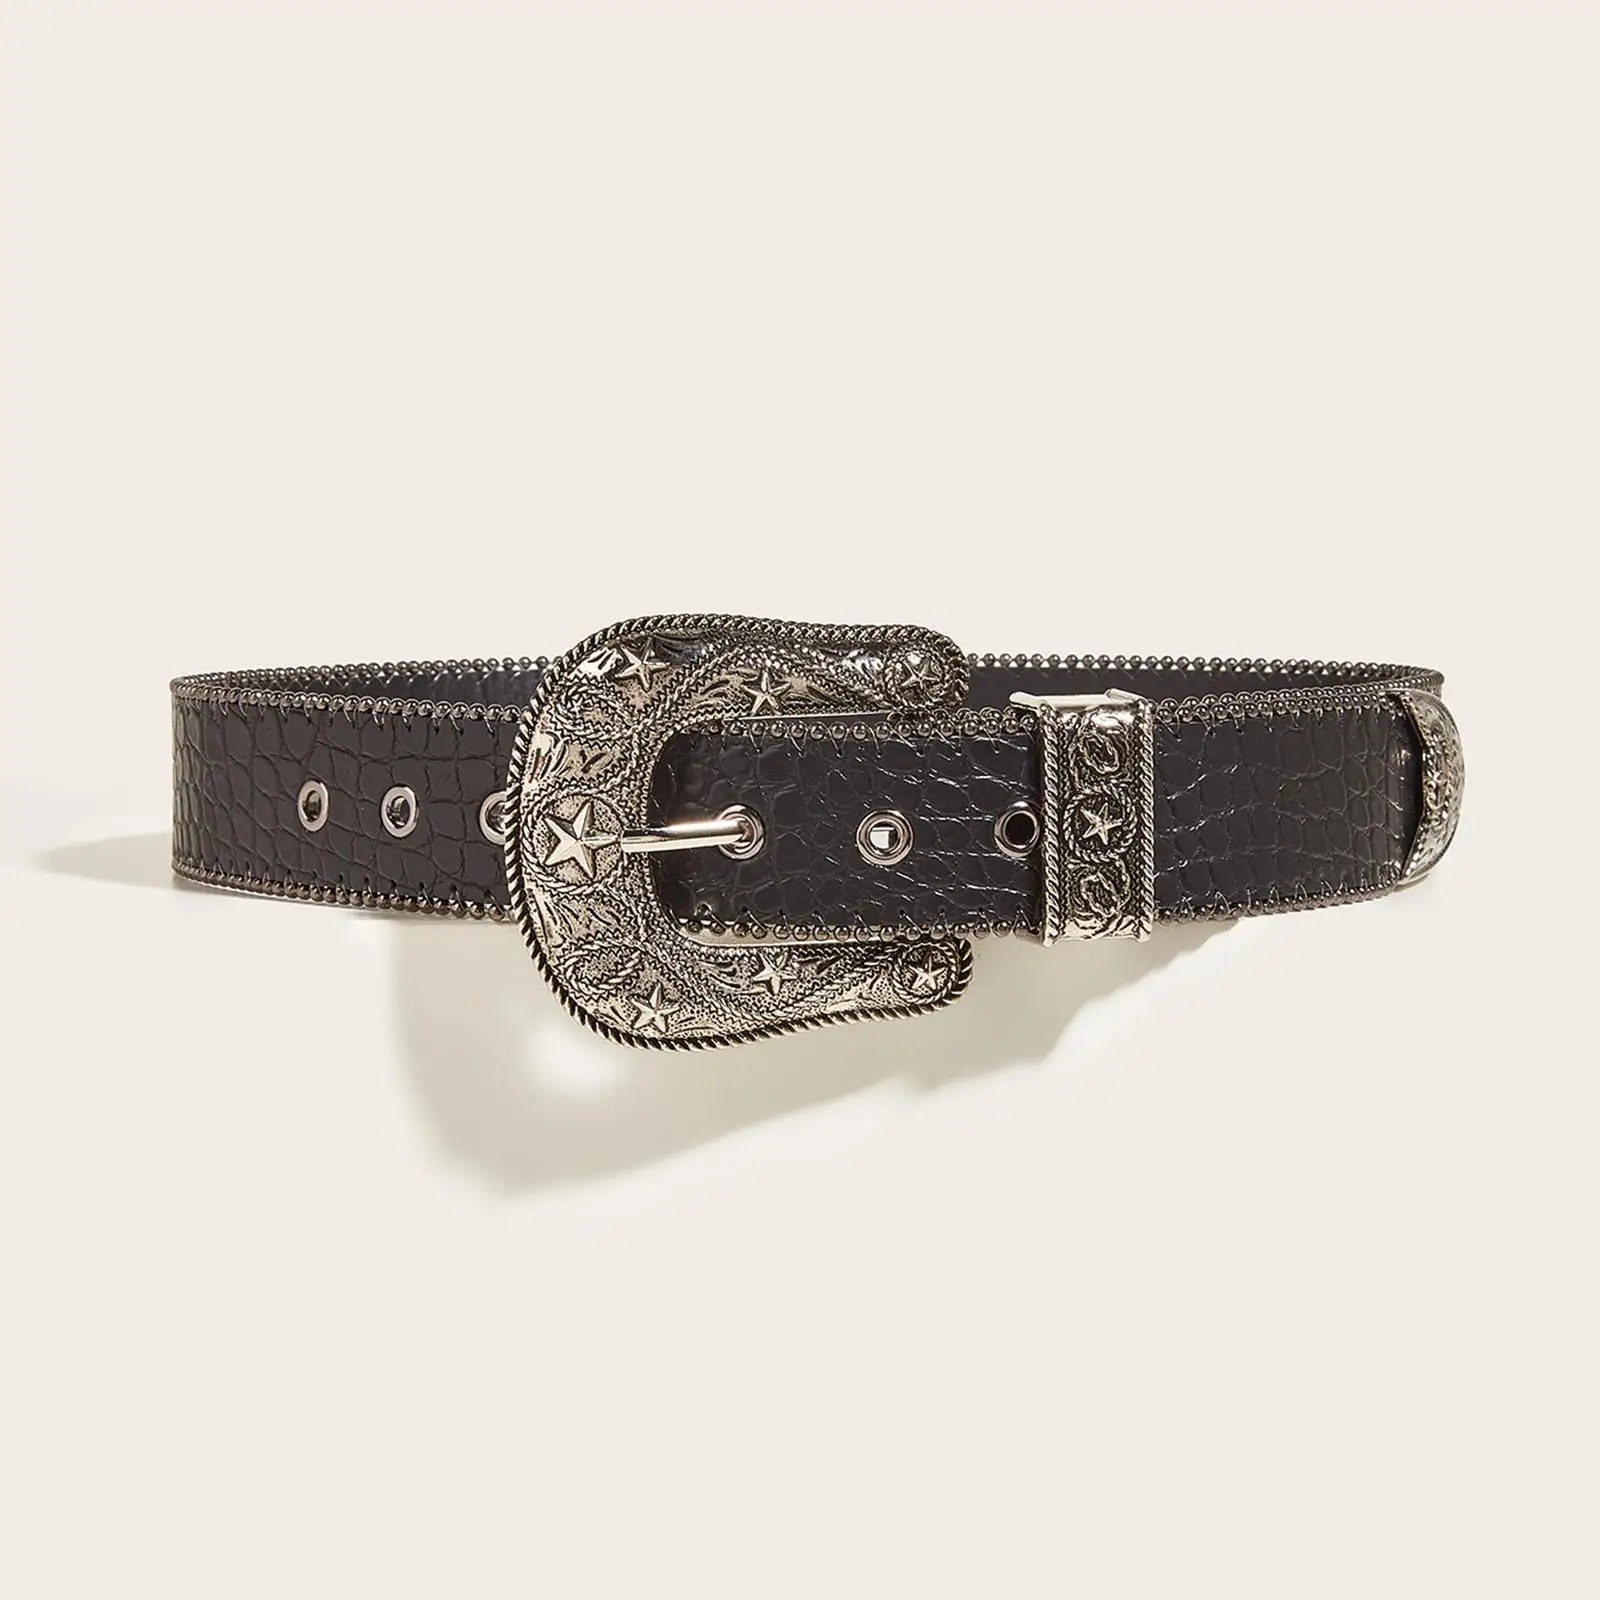 Women Buckle Belt Leather Belt Strap Casual Belt Adjustable Belt Waist Strap Waist Belt for Lovers Friends Lady Gifts